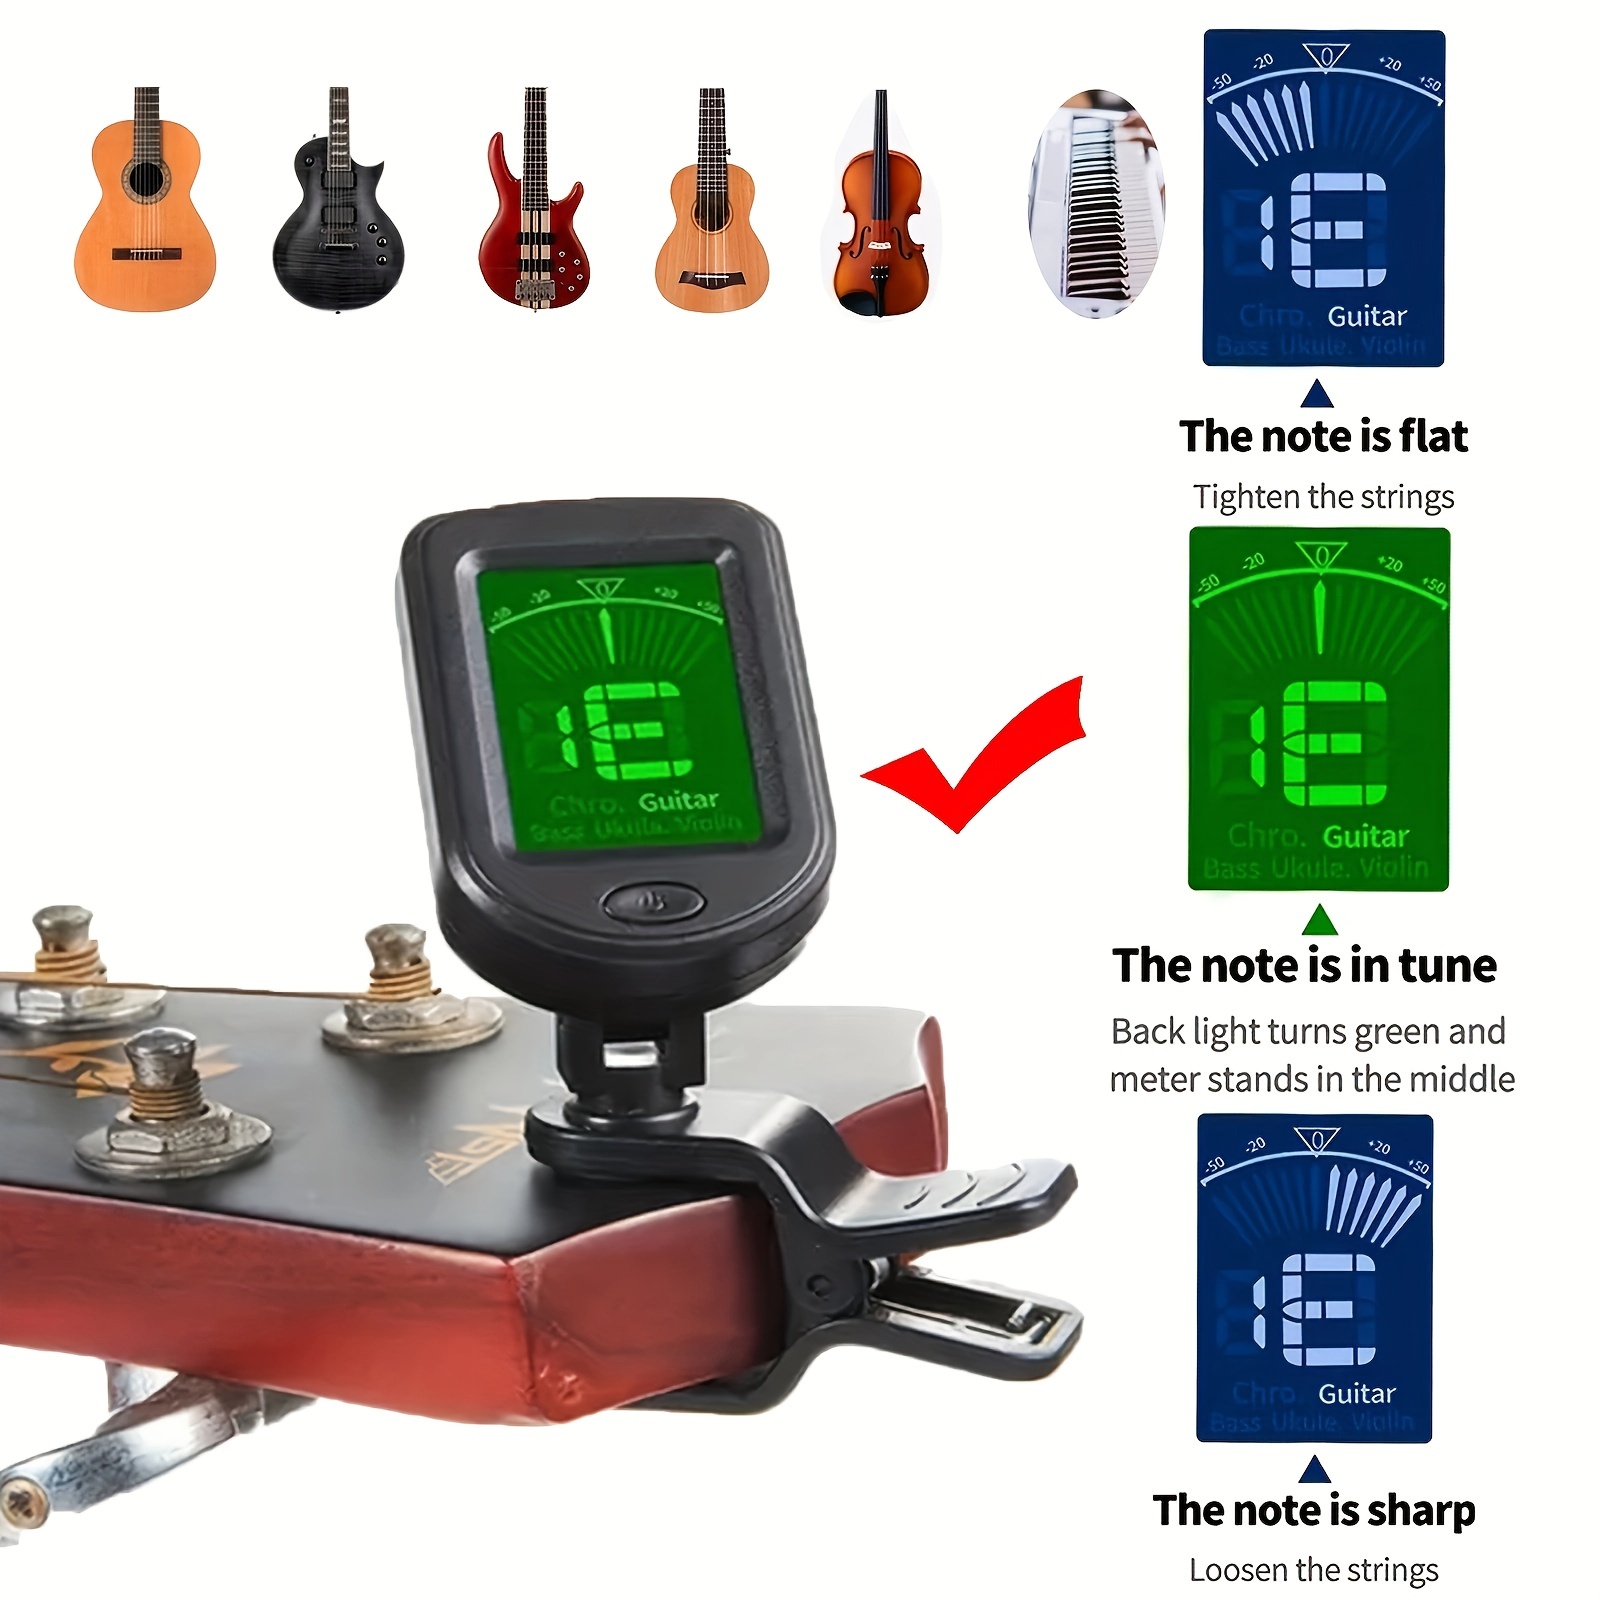 Accordeur de guitare électrique, pédale à Clip, chromatique, numérique,  Mini écran LCD, accordeurs pour guitare basse